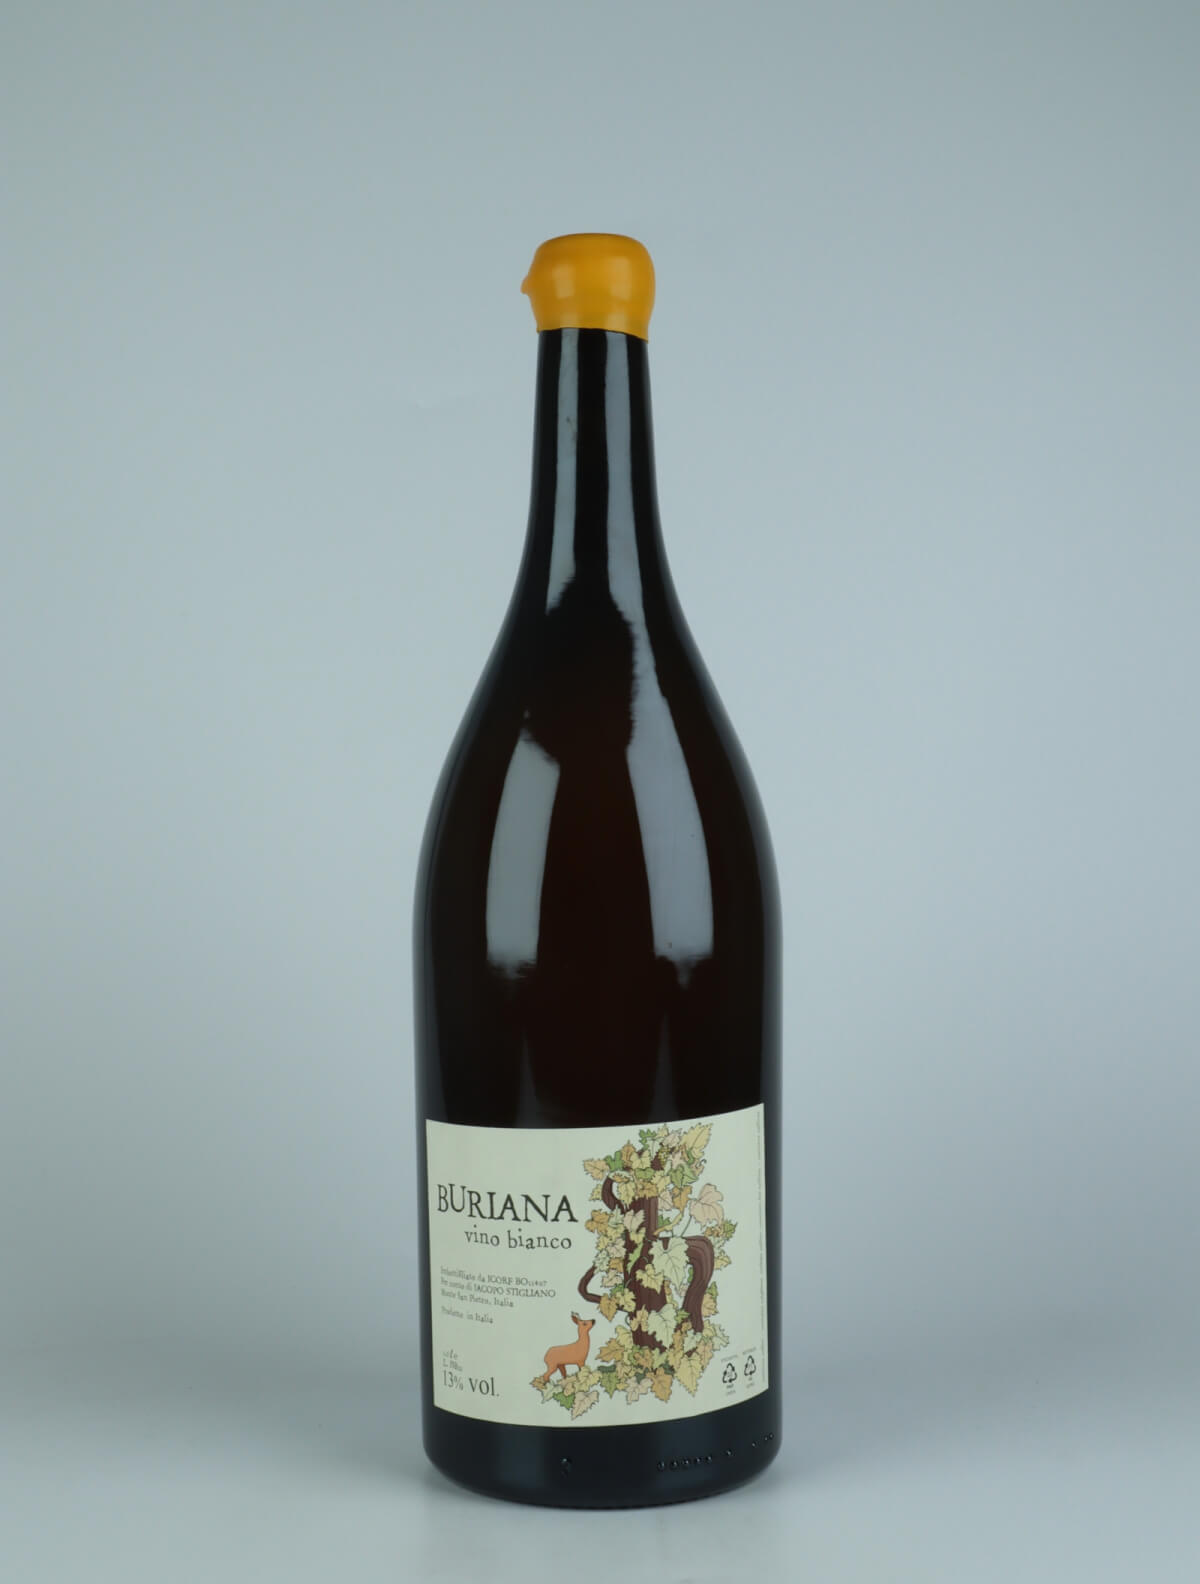 A bottle 2021 Buriana White wine from Jacopo Stigliano, Emilia-Romagna in Italy